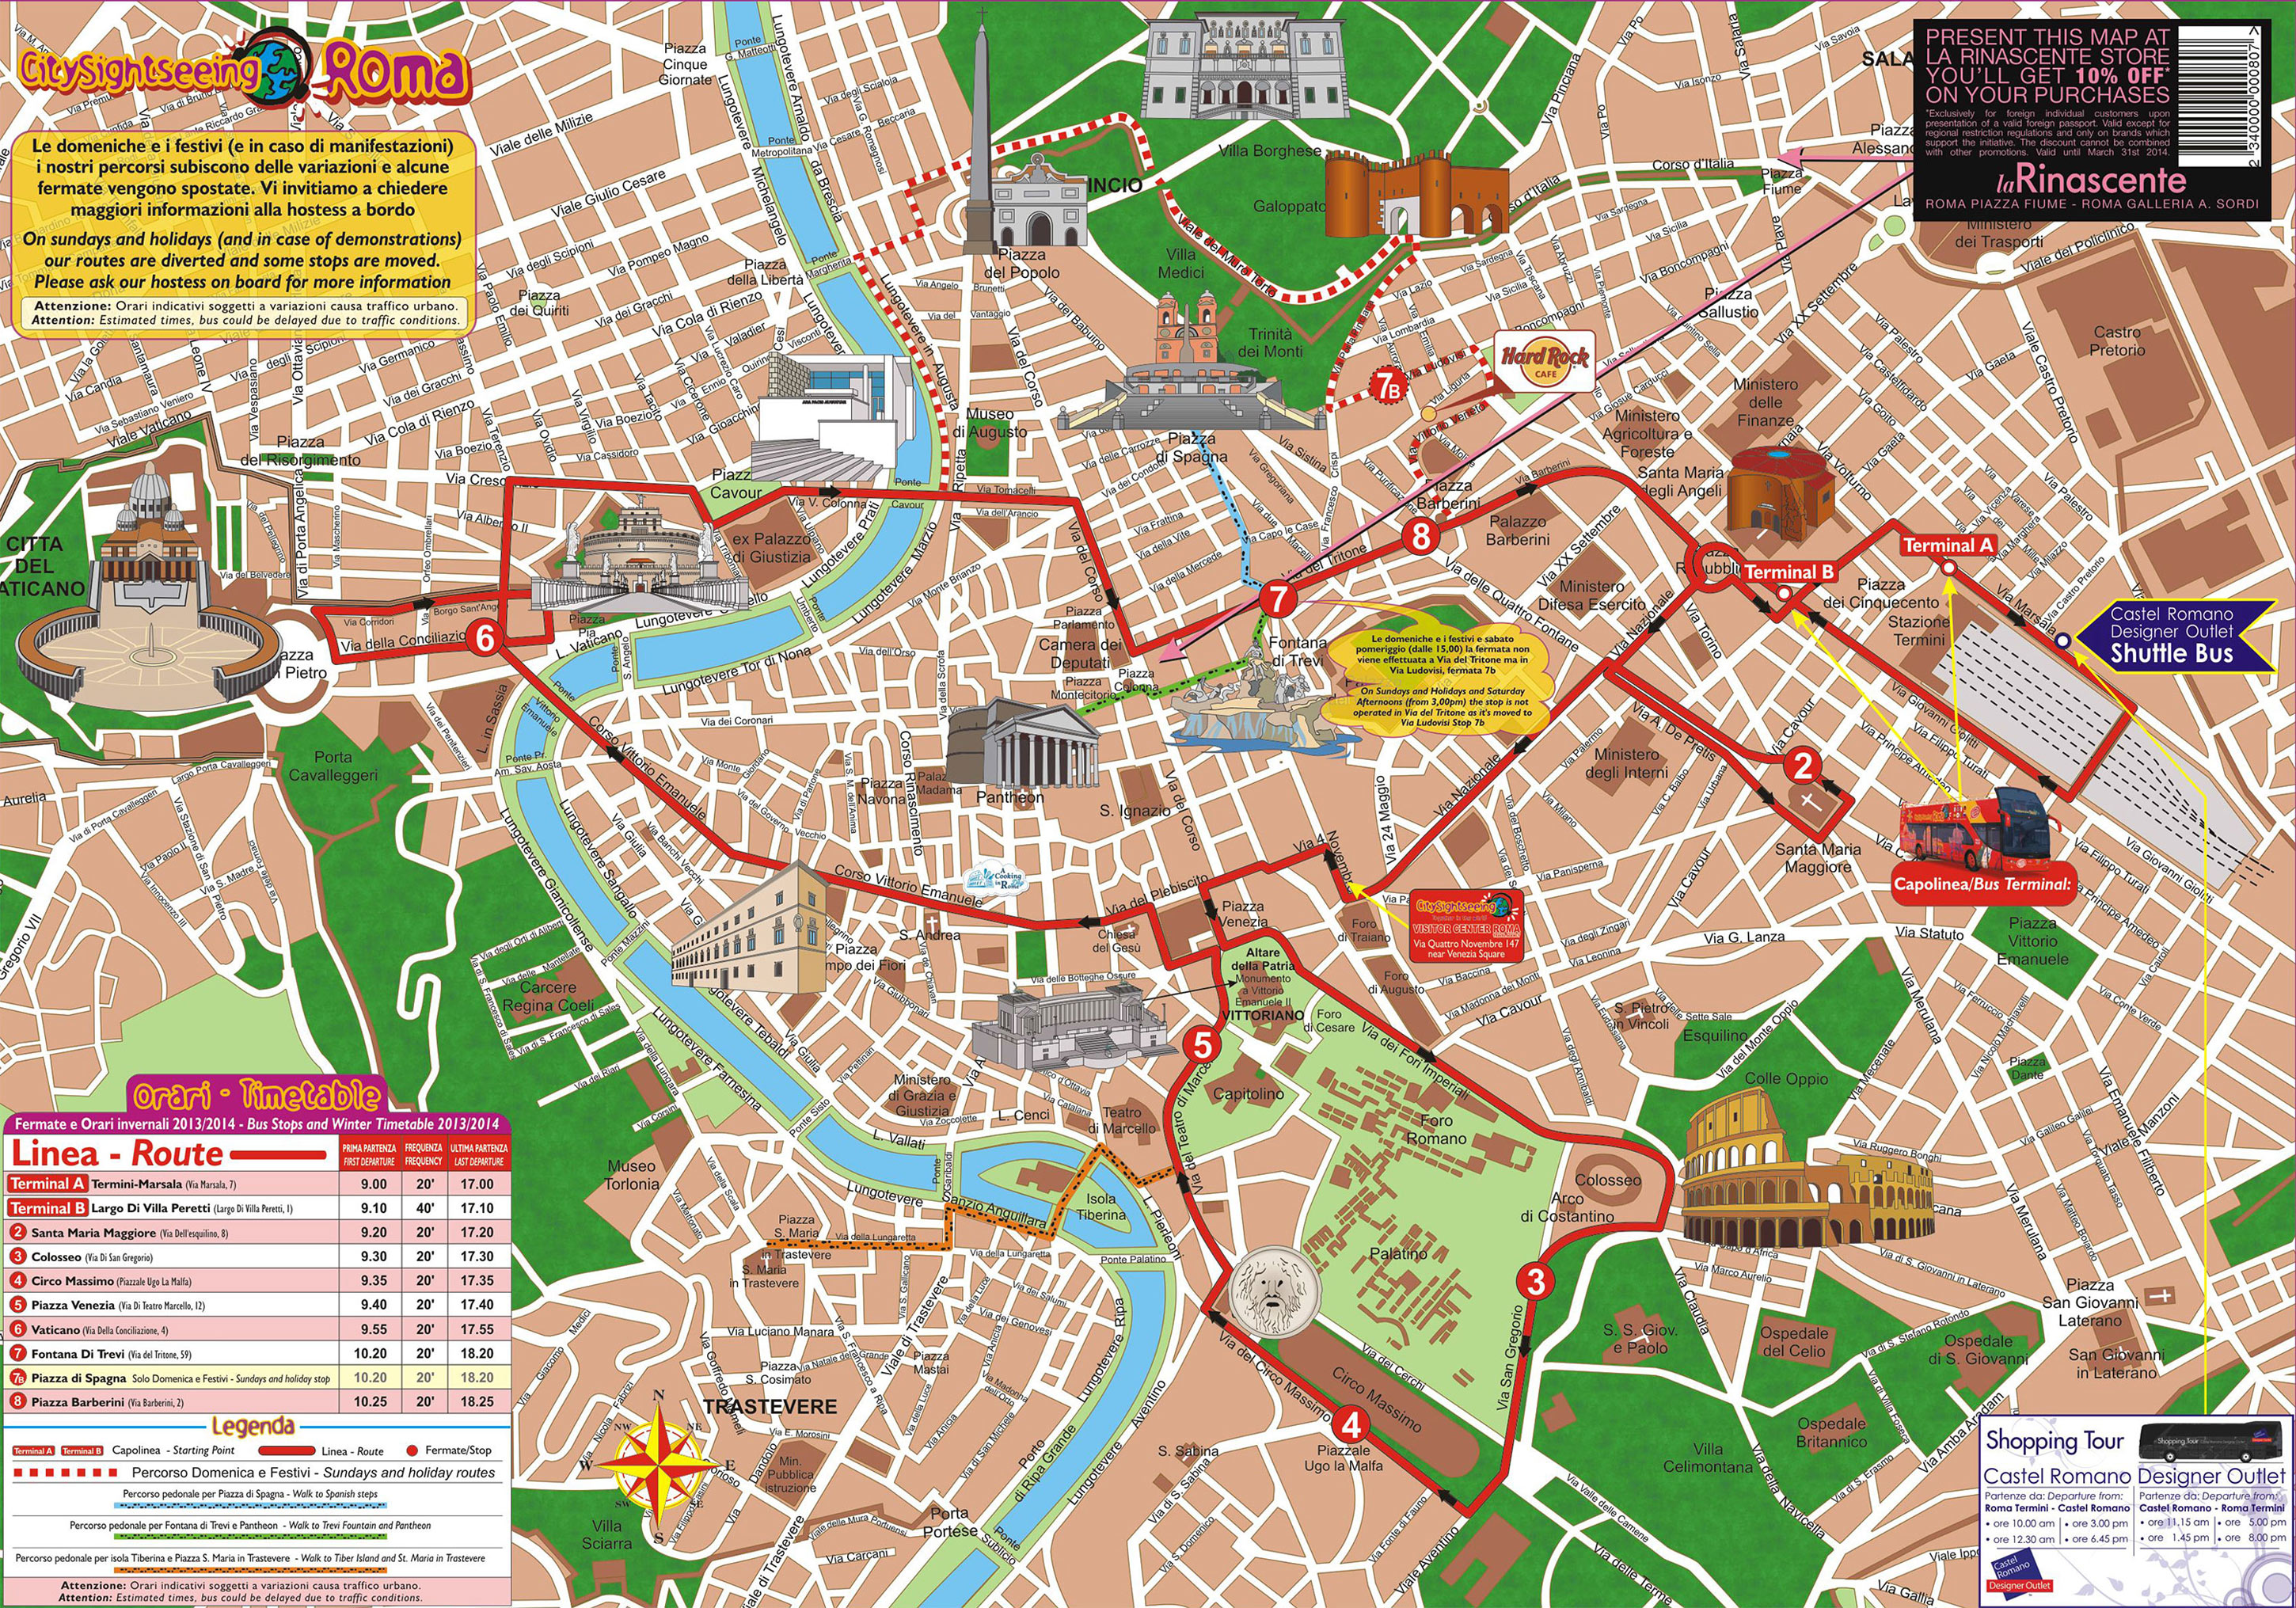 Plano y mapa turistico de Roma : monumentos y tours